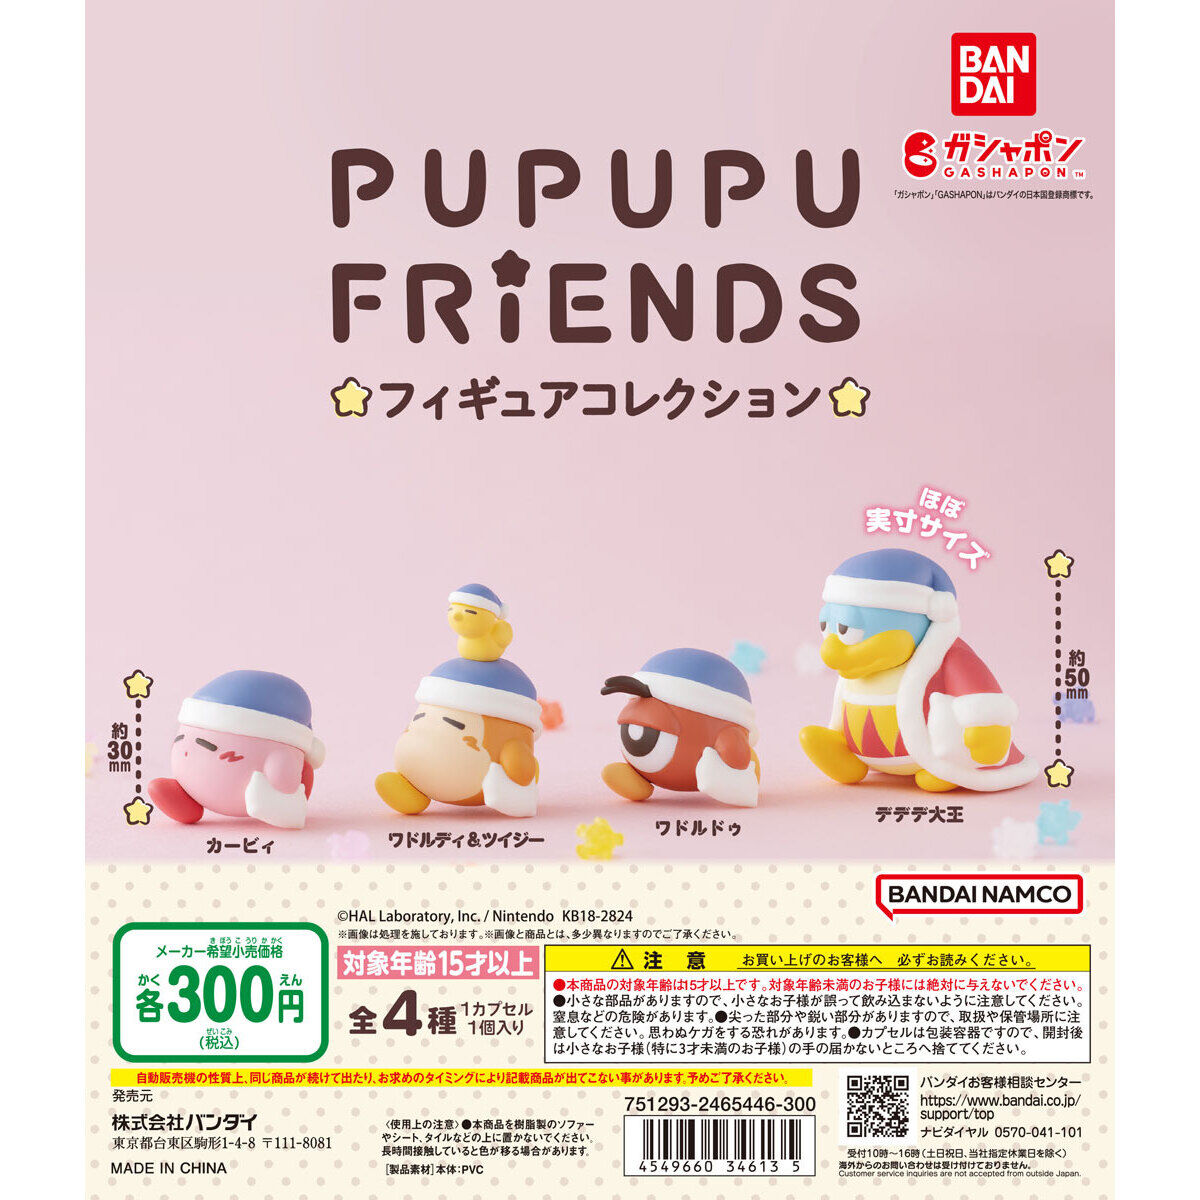 星のカービィ PUPUPU FRIENDS フィギュアコレクション